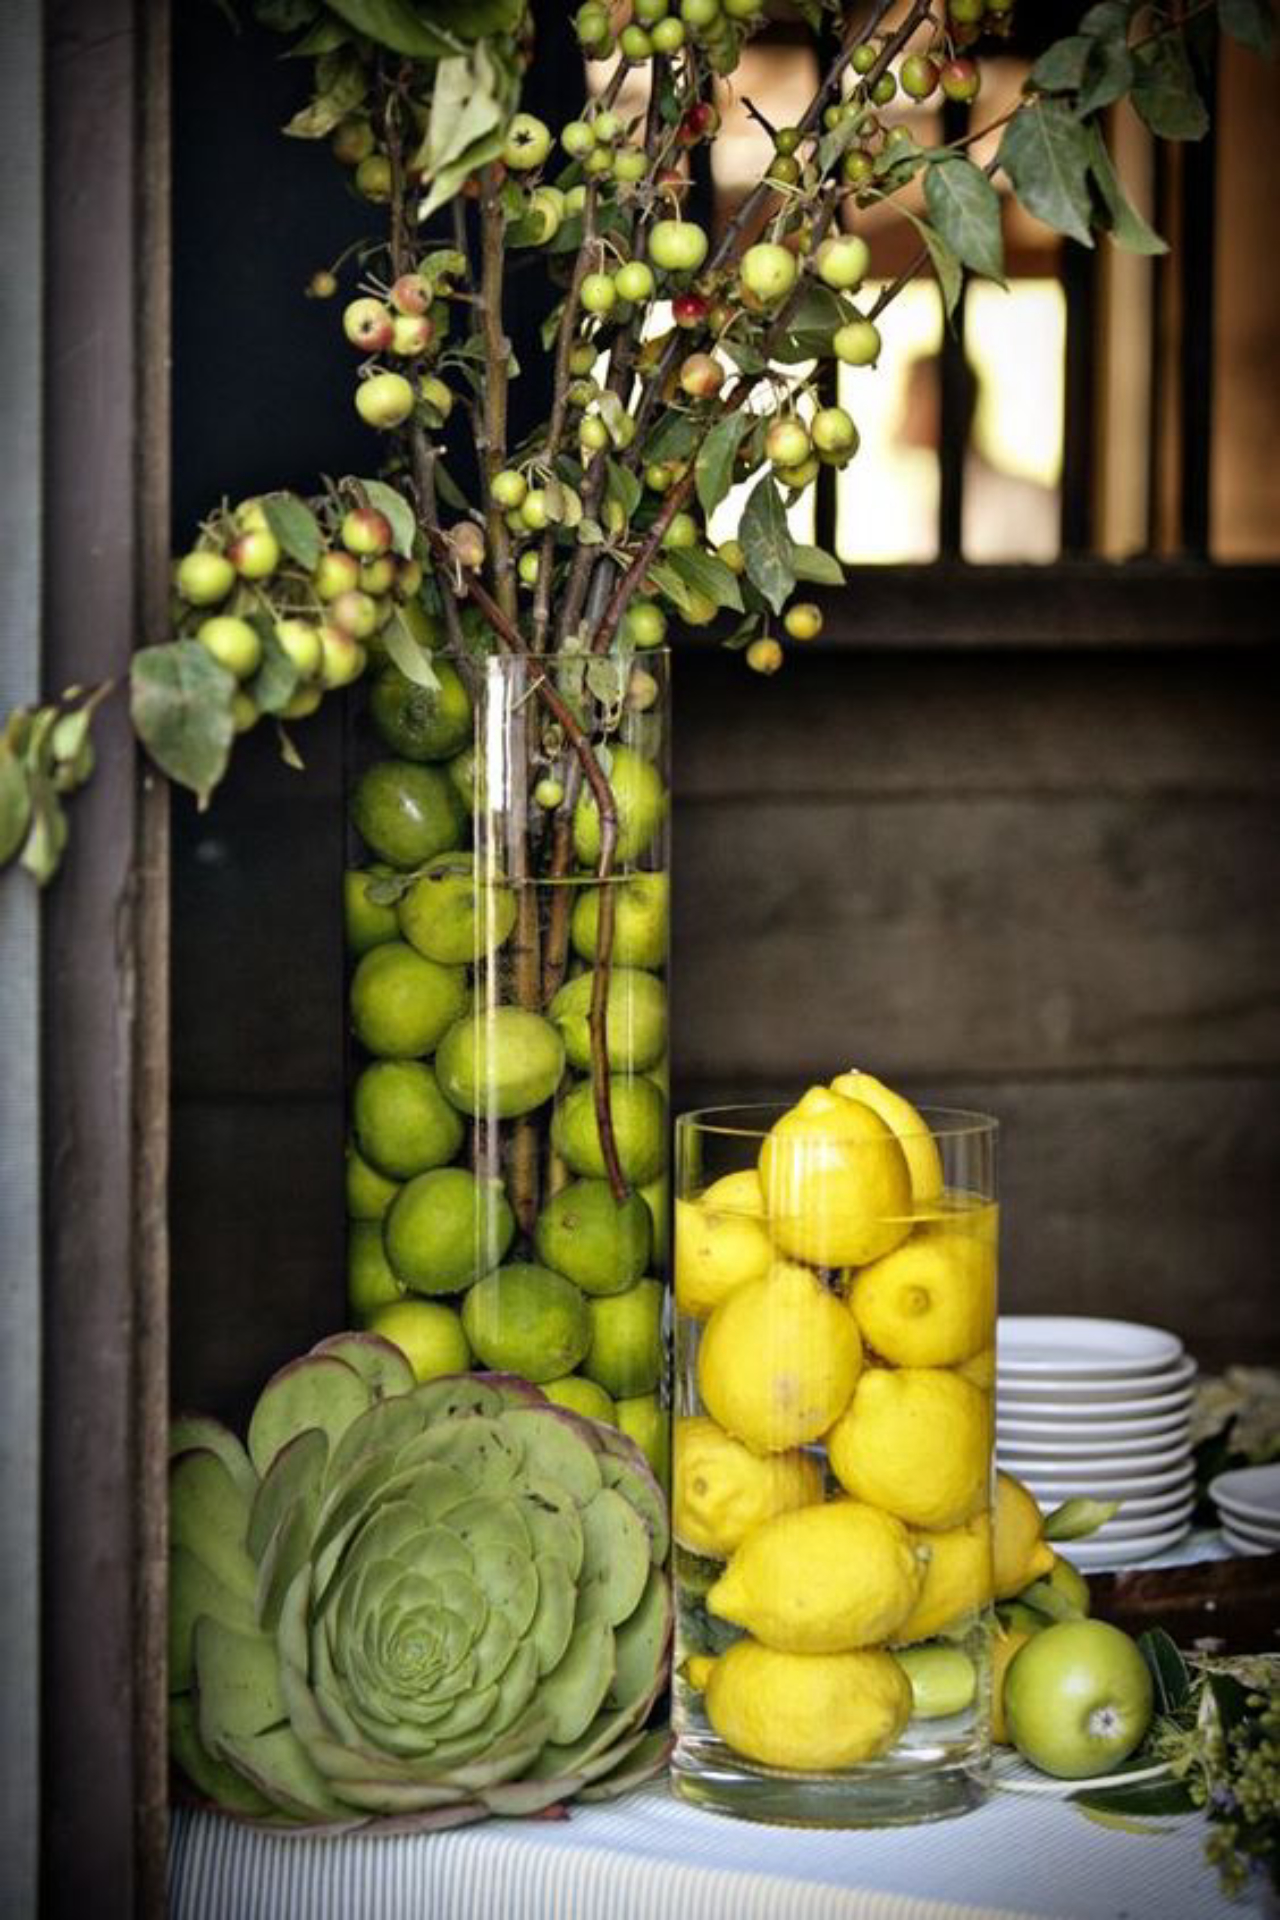 Galhos com frutas podem ser colocados em vasos com água para formar enfeites de mesa. Para deixar o arranjo ainda mais bonito, coloque limões inteiros na água. Foto: Pinterest/Reprodução